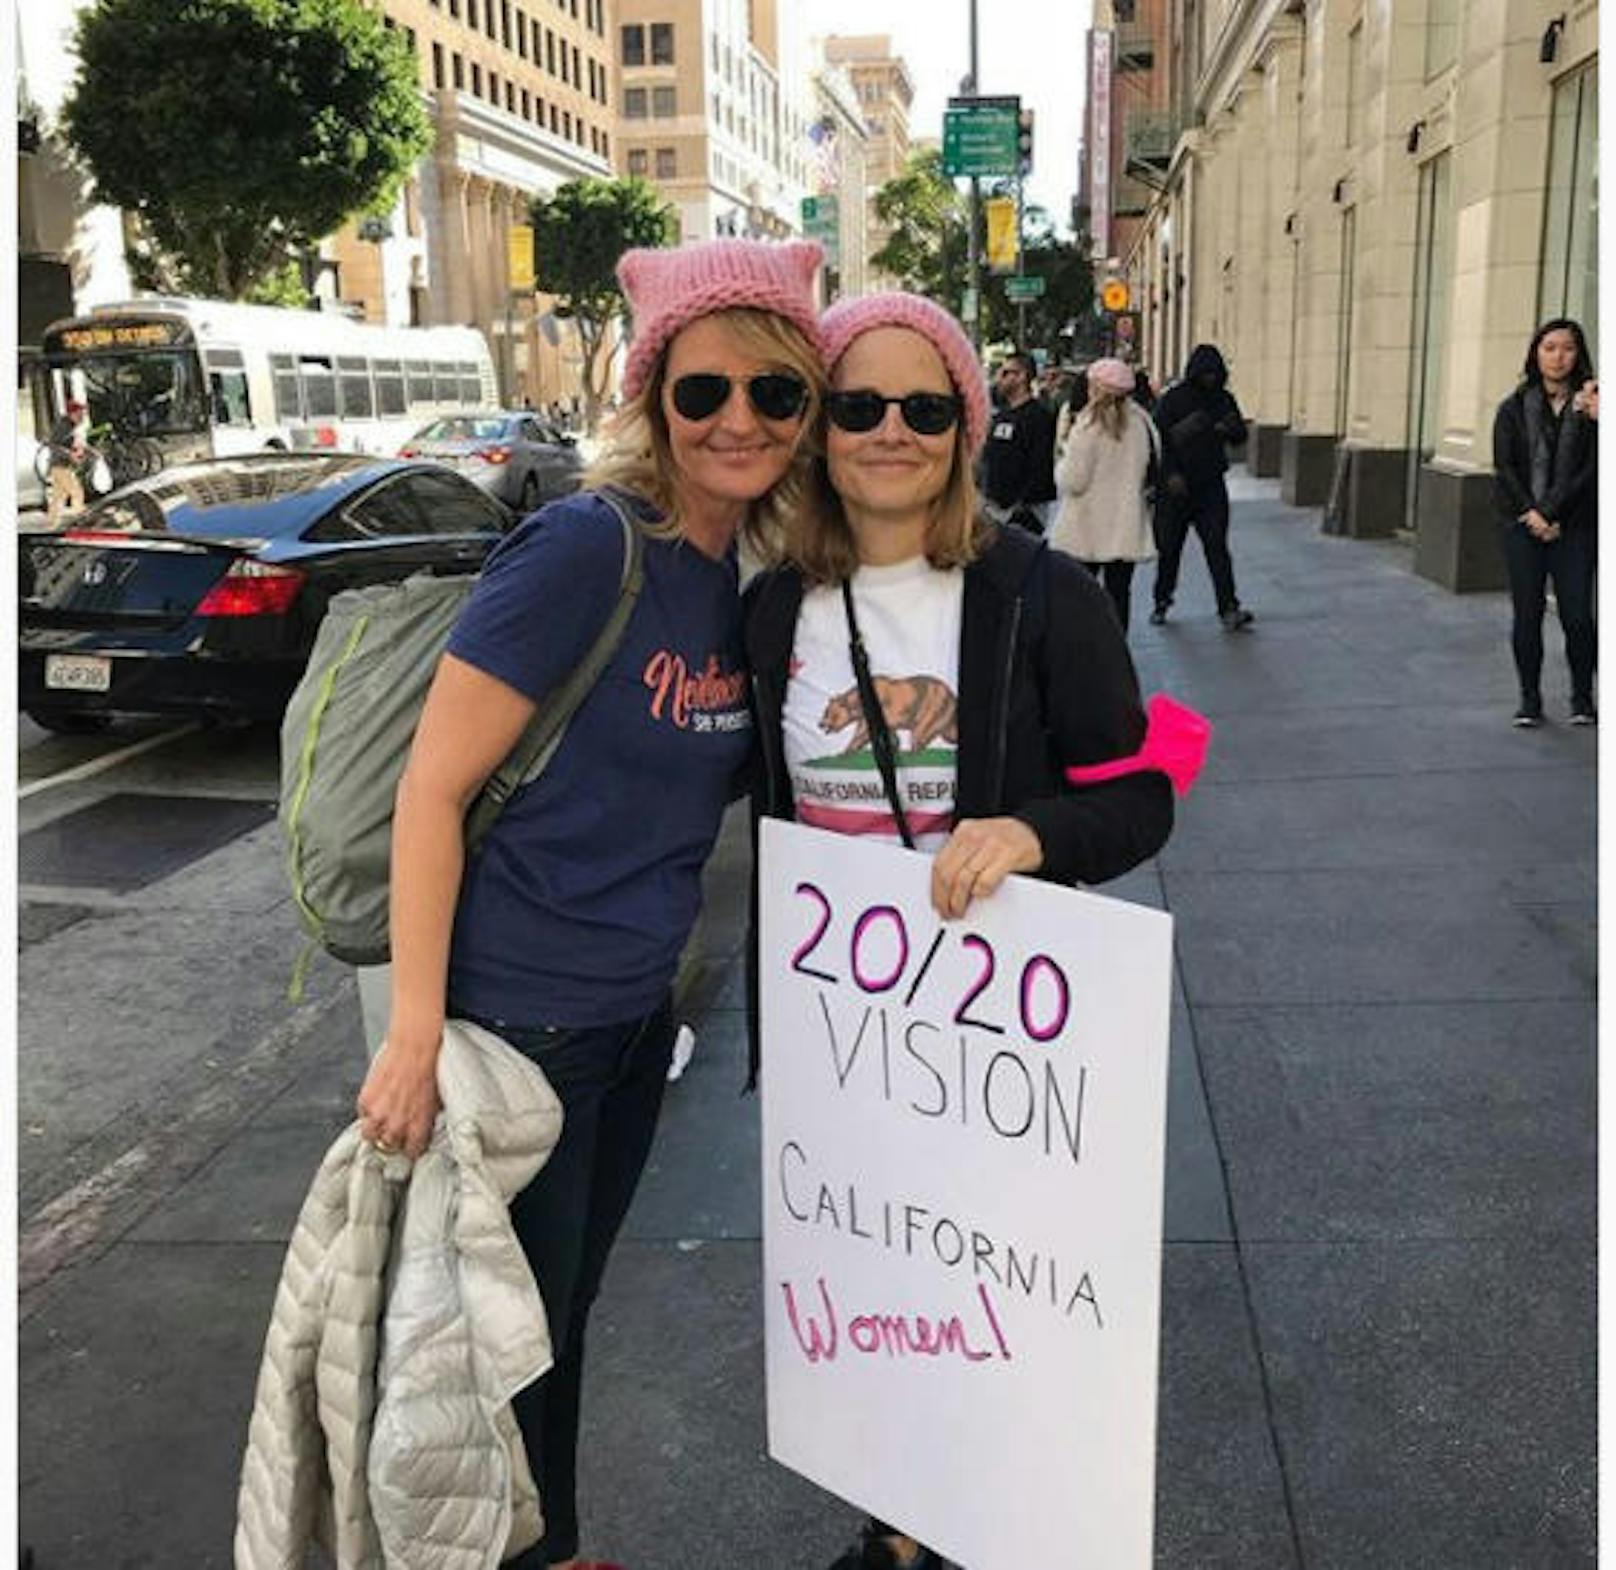 21.01.2018: Power-Duo Helen Hunt und Jodie Foster beim Women's March. Hunderttausende waren auf den Straßen, auf Instagram könnte man annehmen, dass mindestens die Hälfte davon Stars waren.